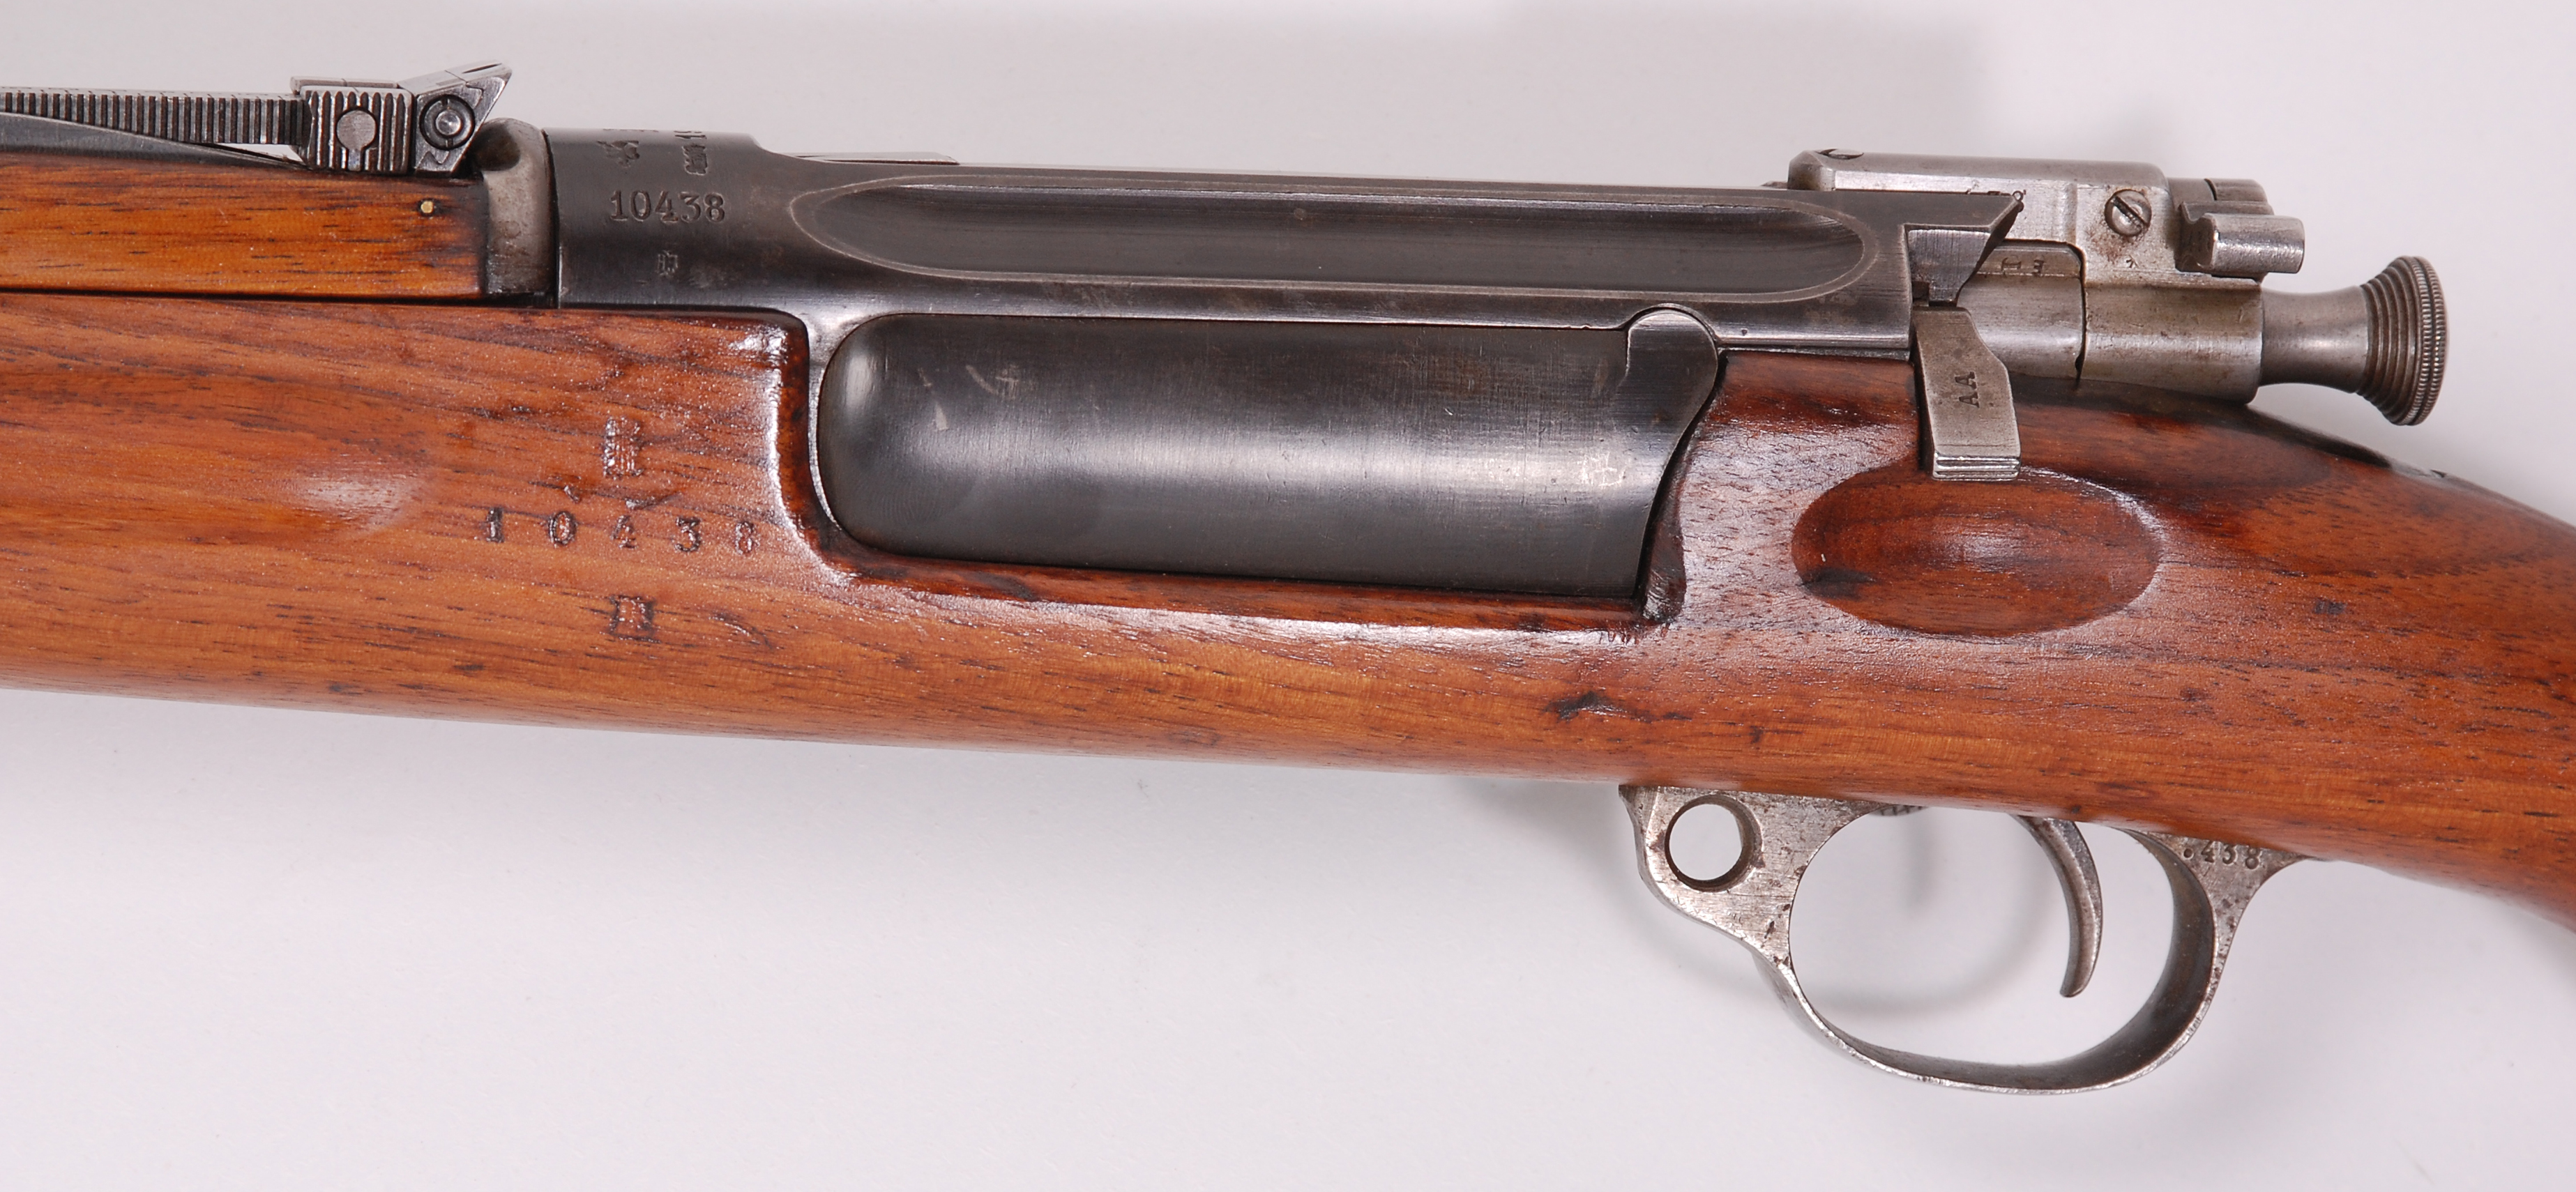 ./guns/rifle/bilder/Rifle-Kongsberg-Krag-M1912-10438-4.jpg